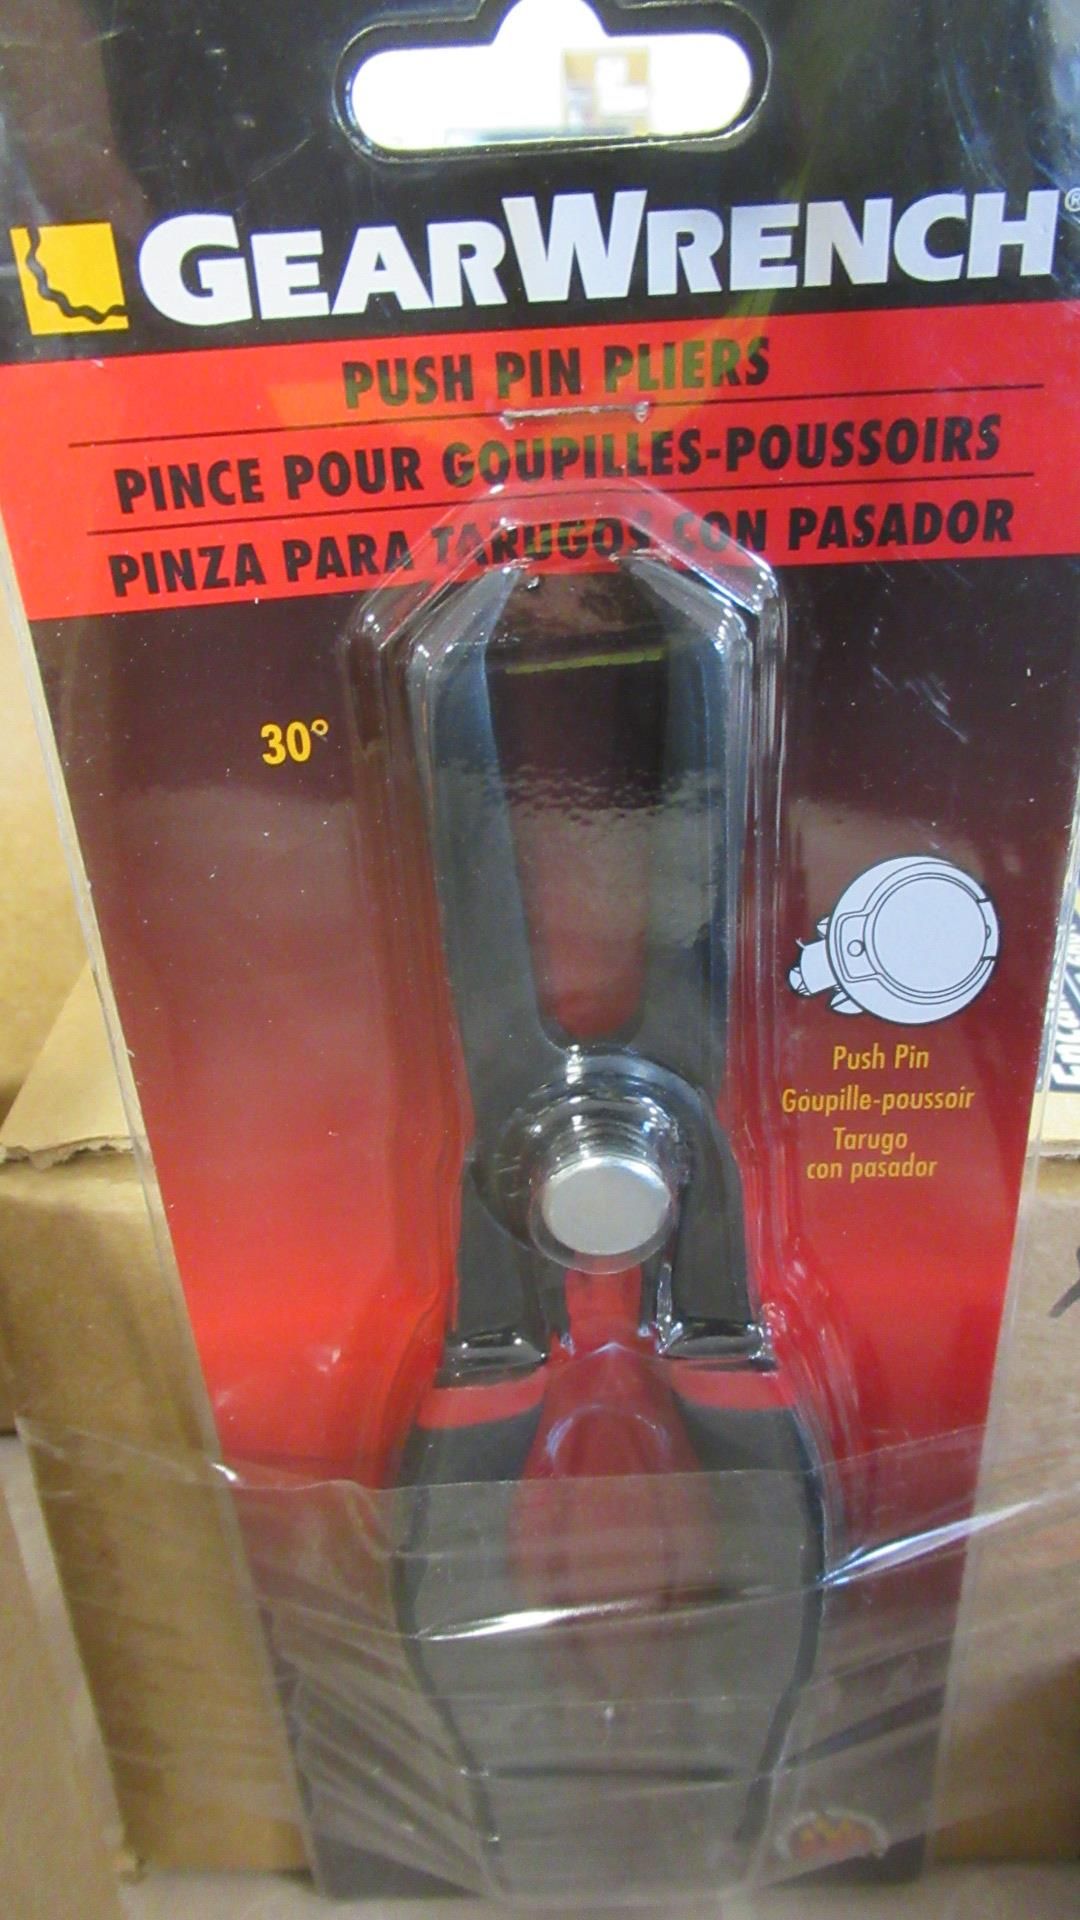 PINCE POUR GOUPILLES -POUSSOIRS GW 3729